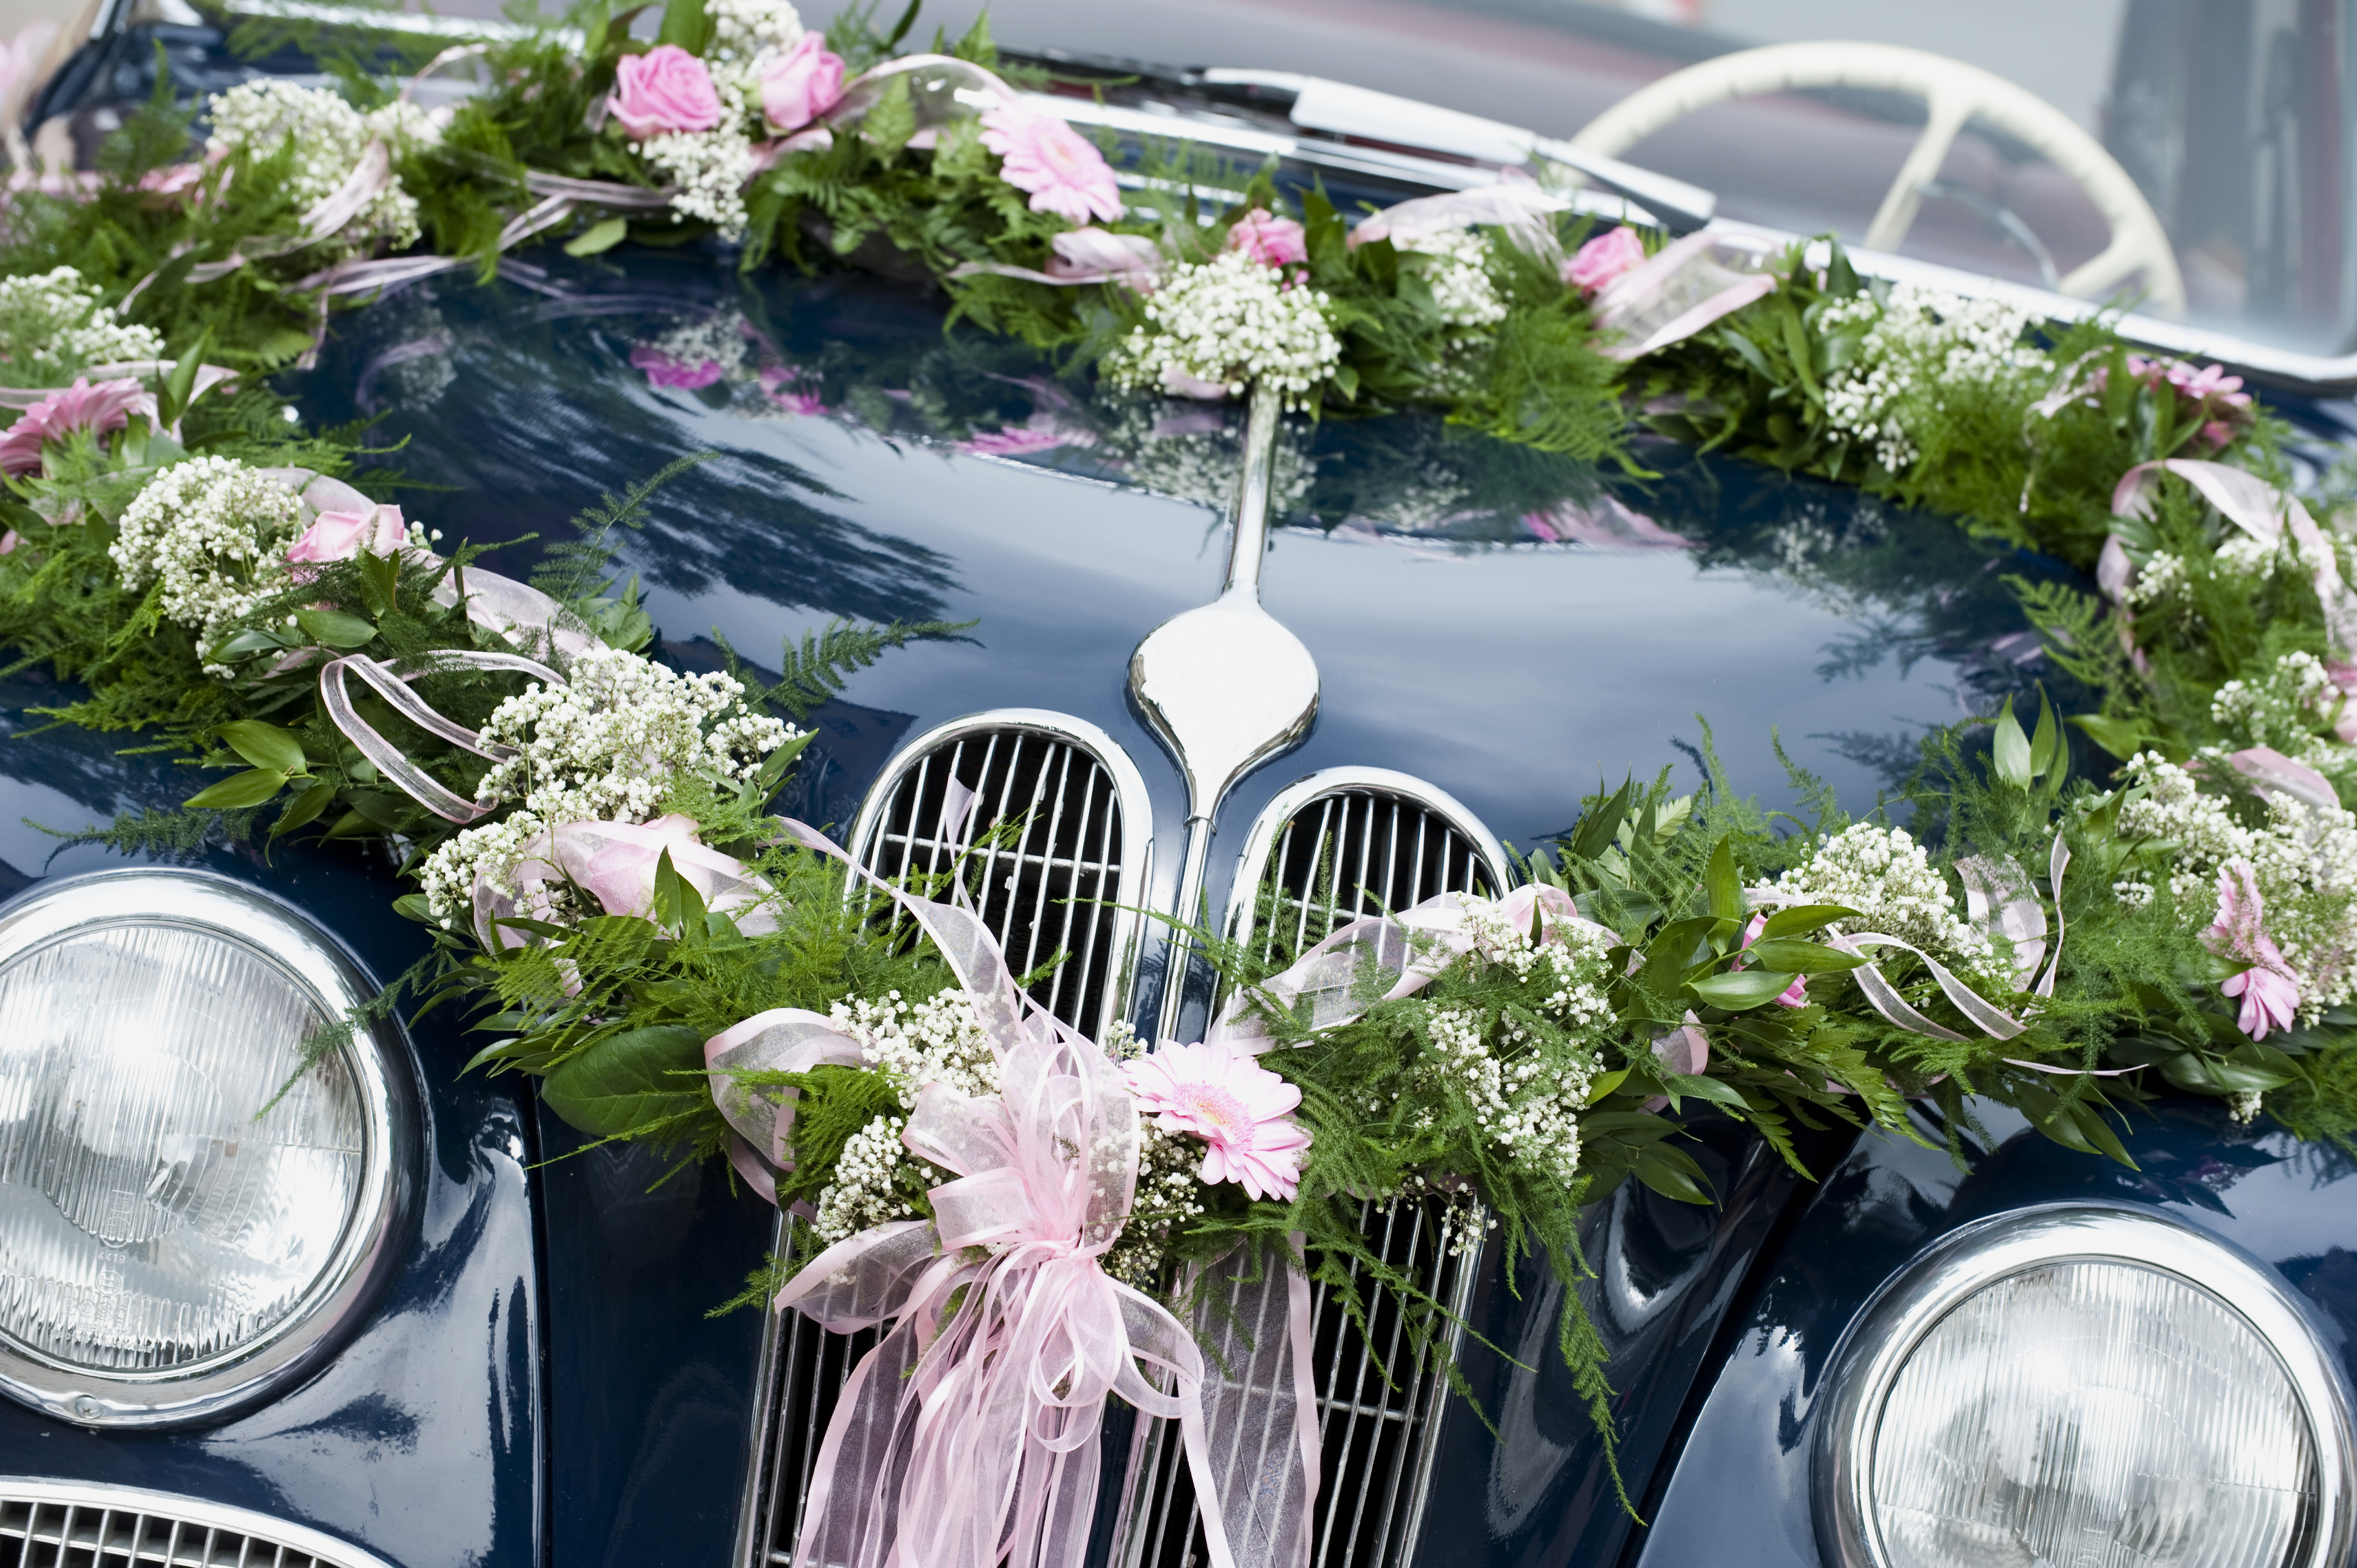 Decoration voiture mariage